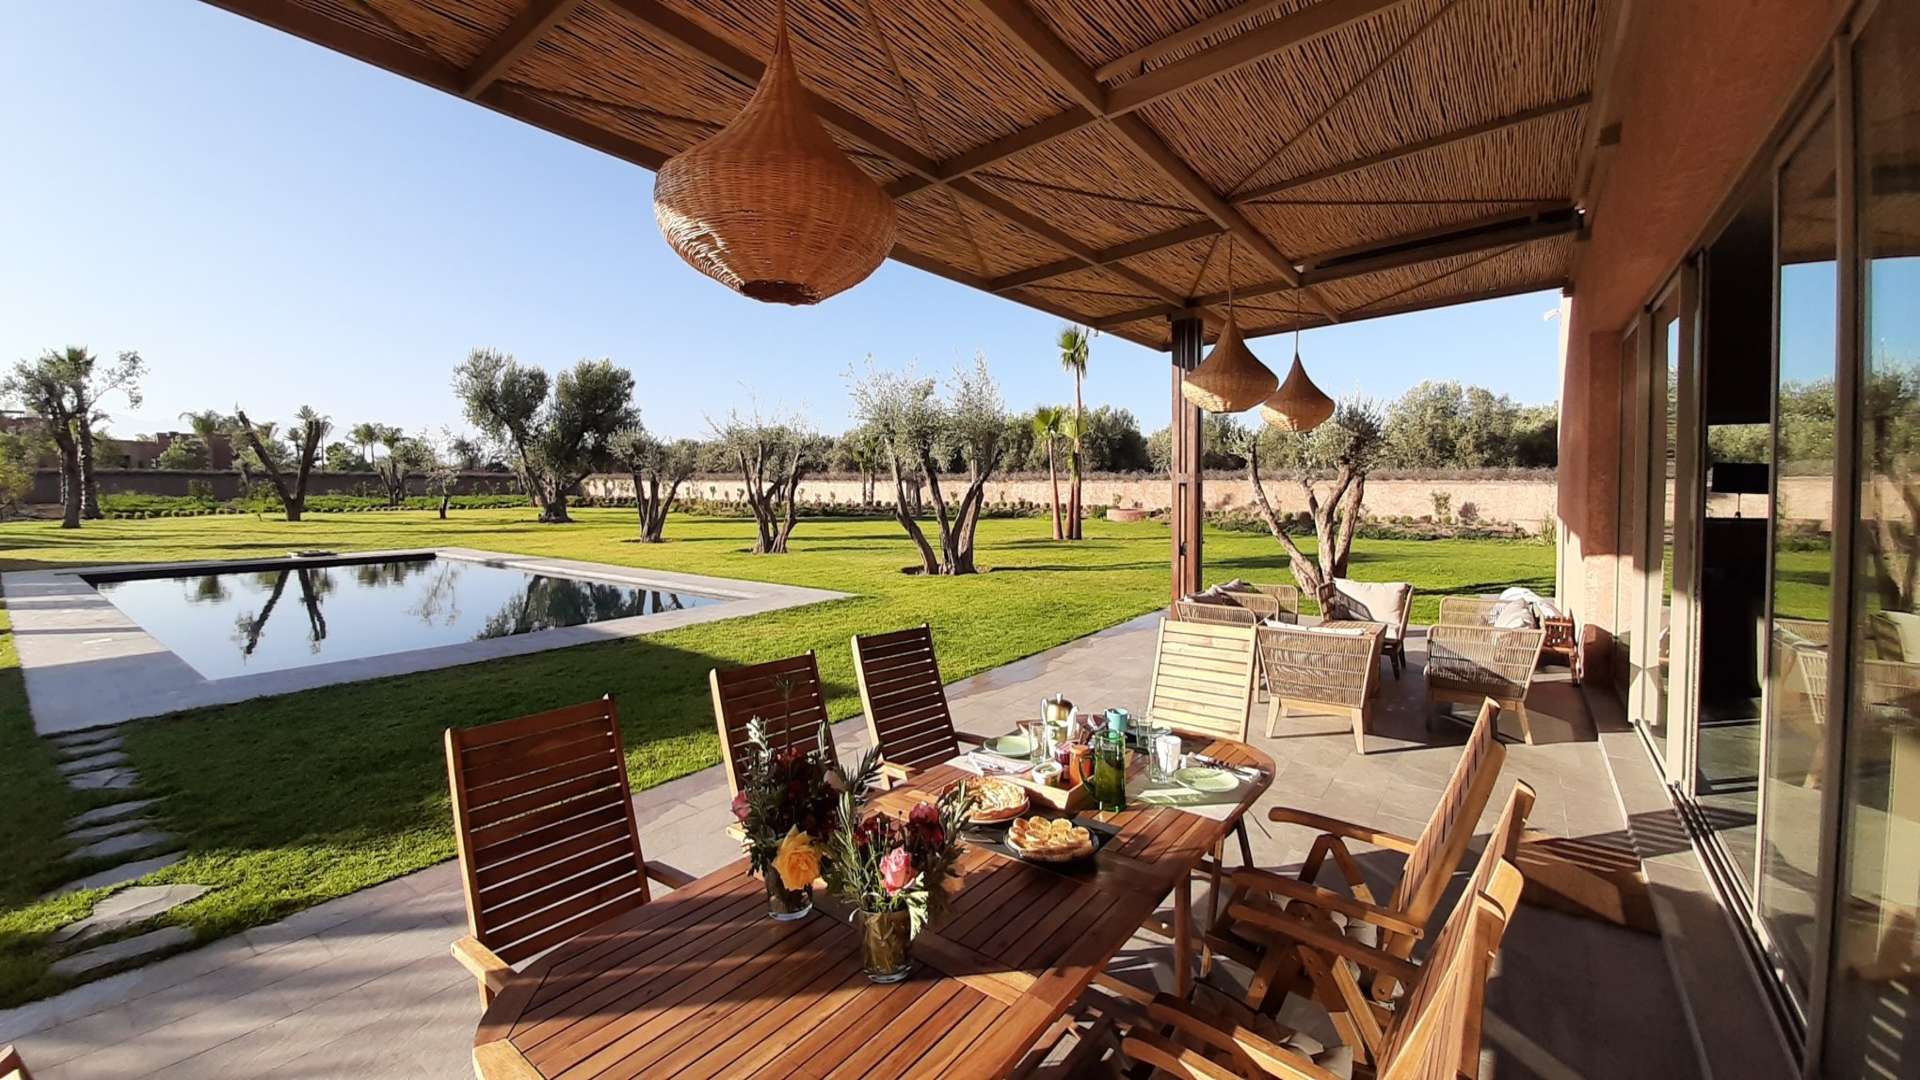 Location de vacances,Villa,Villa Contemporaine et écologique de 6 suites à Marrakech,Marrakech,Sidi Youssef Ben Ali